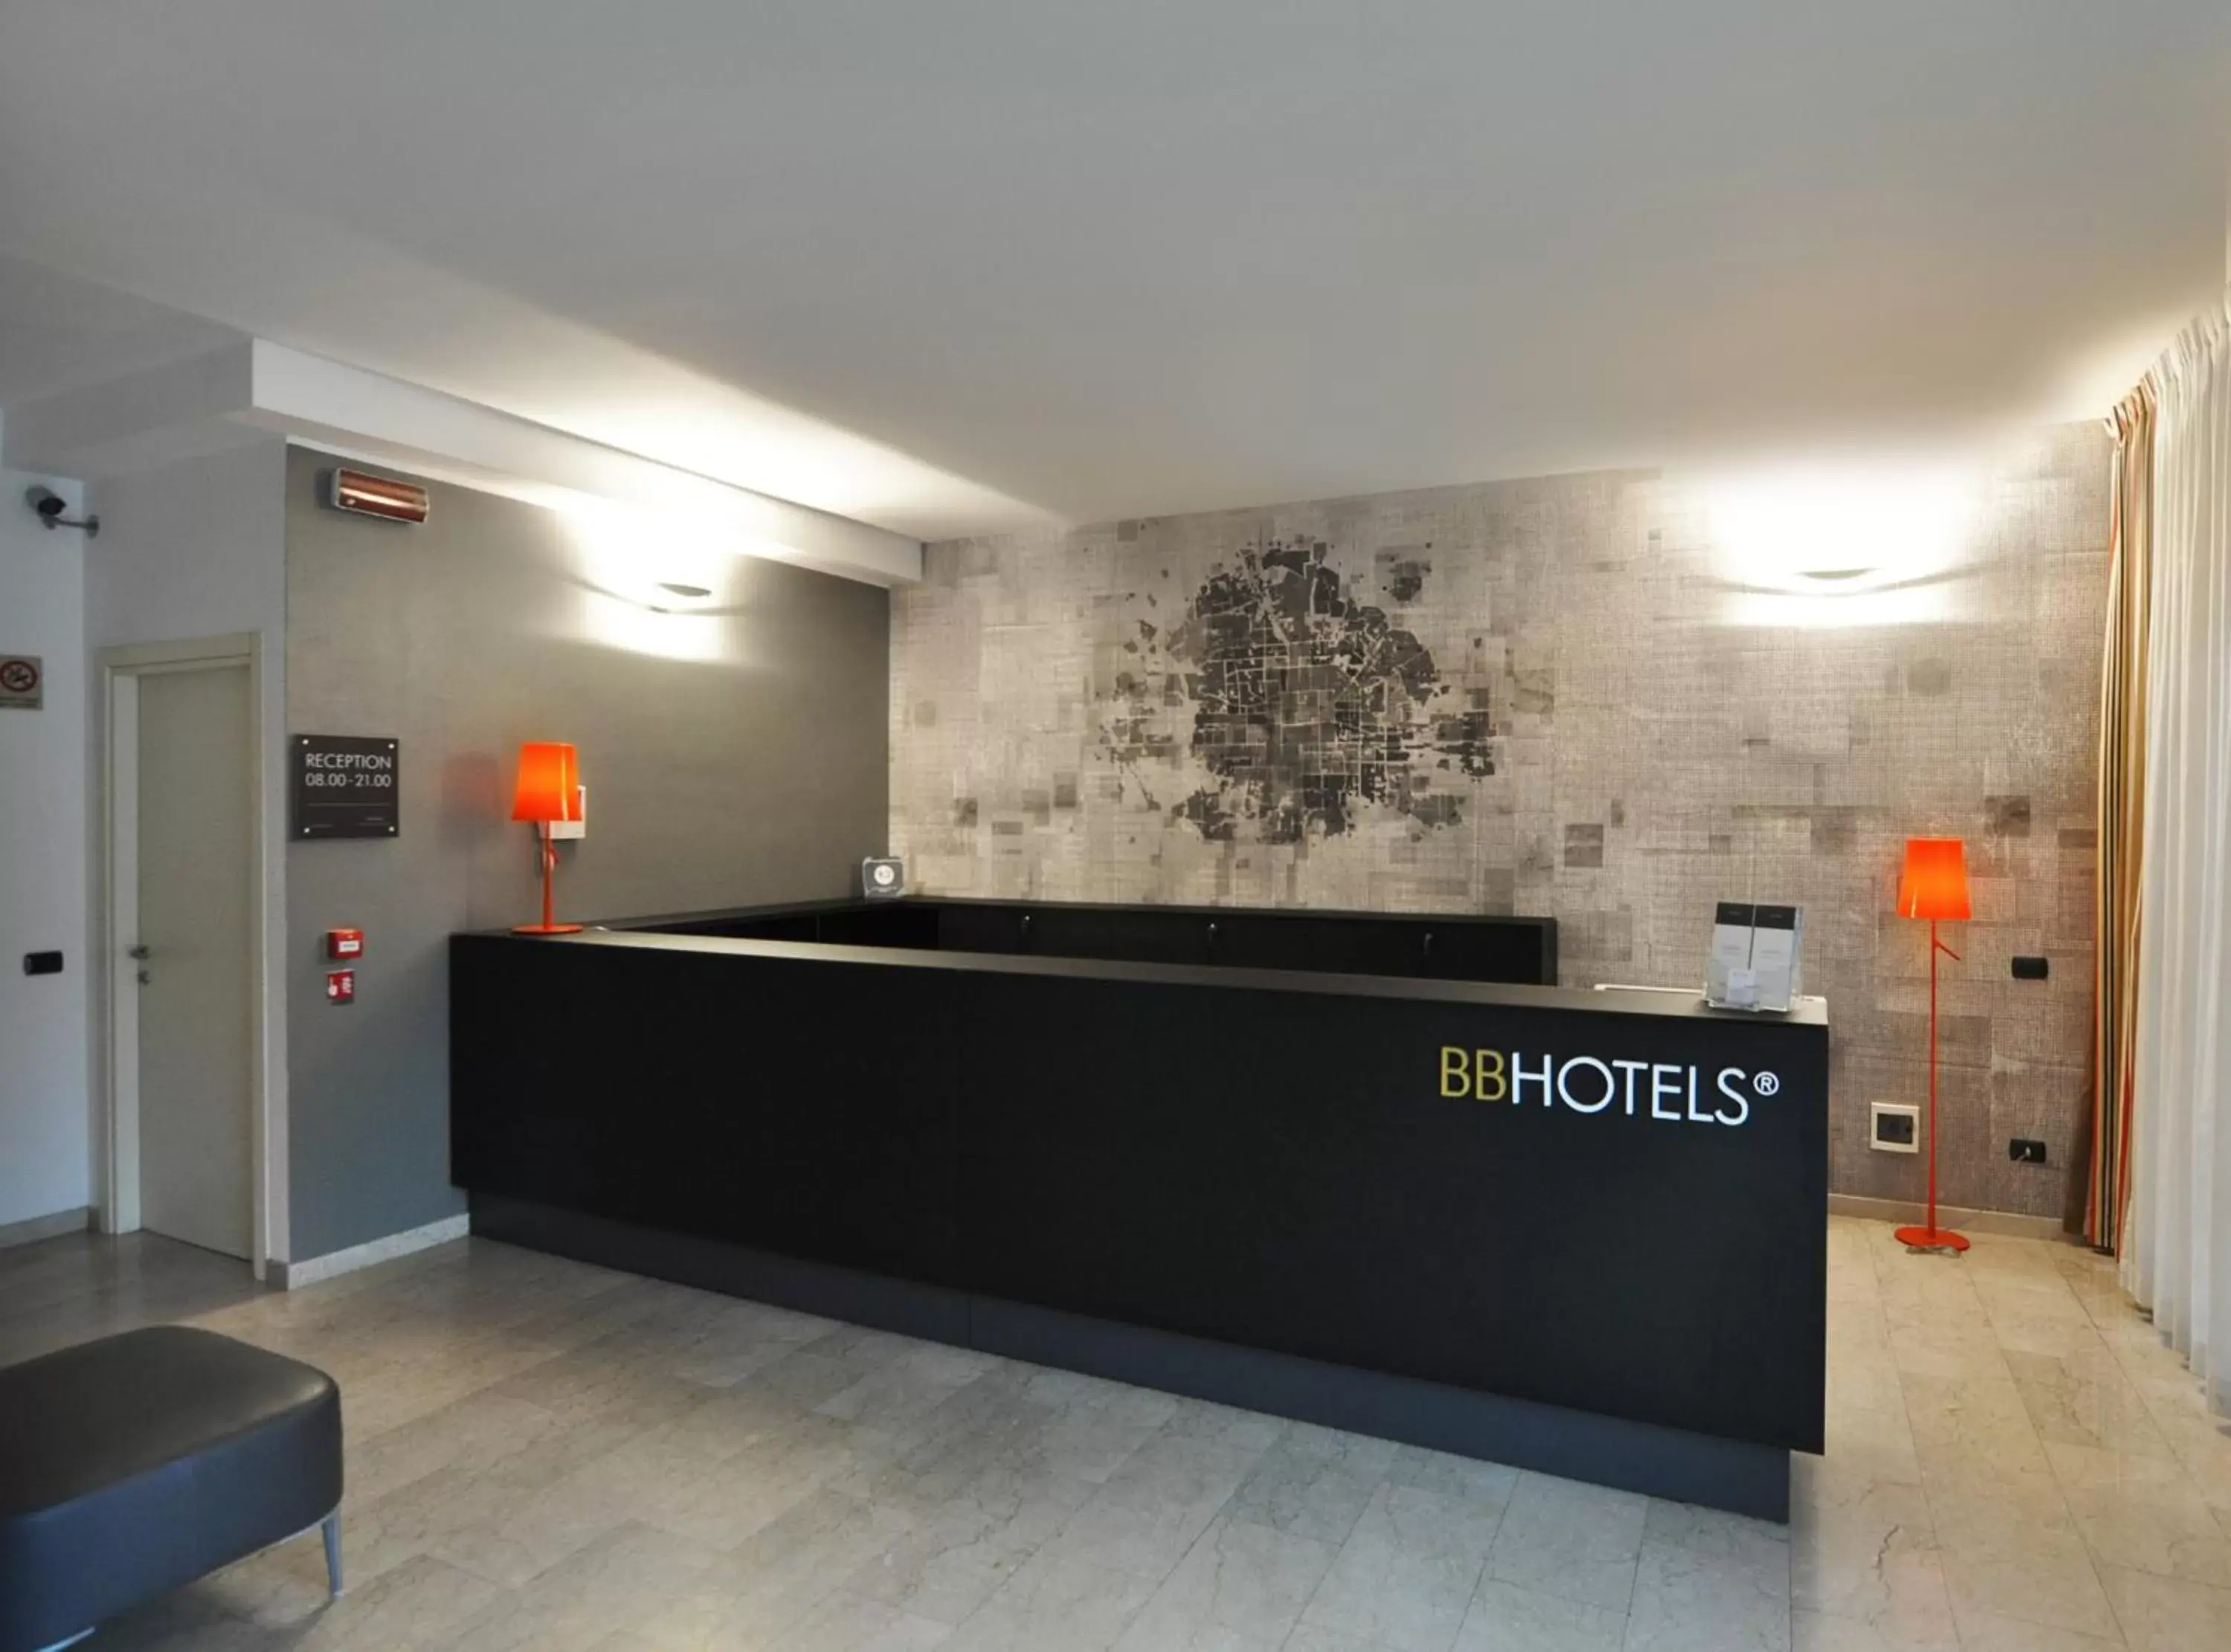 Lobby or reception, Lobby/Reception in BB Hotels Aparthotel Bicocca